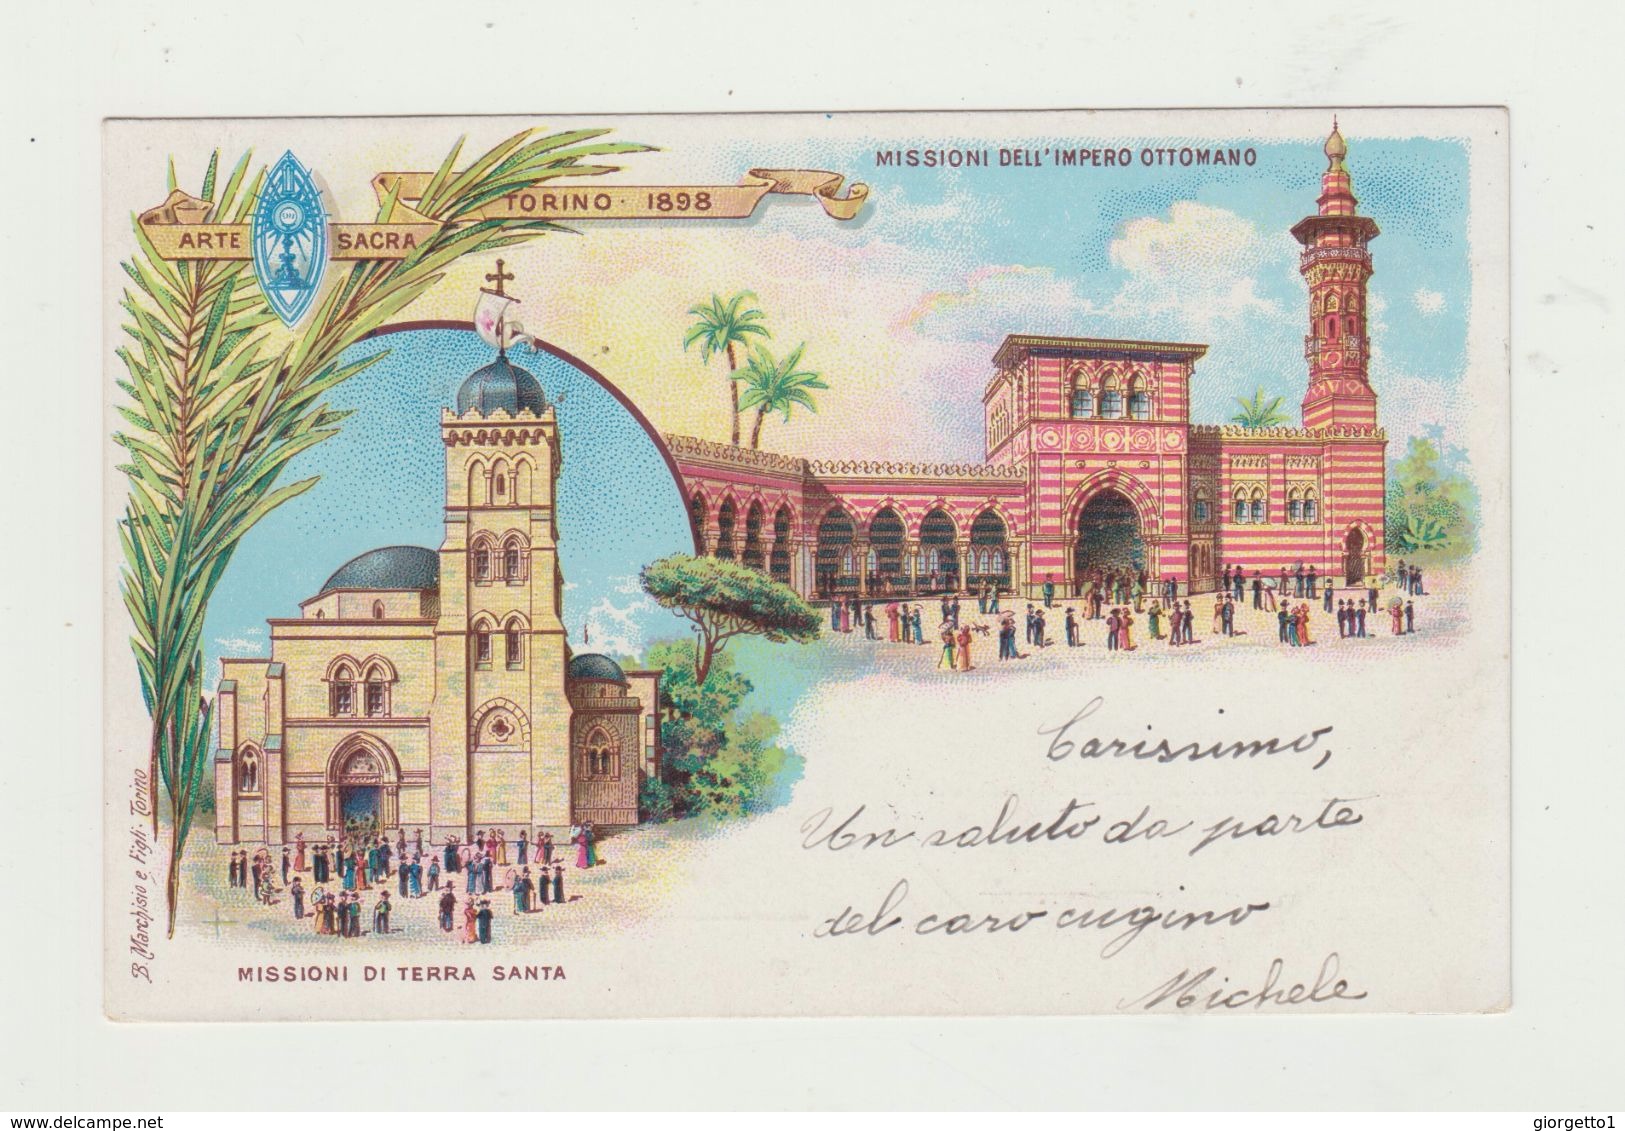 ARTE SACRA TORINO 1898 - CARTOLINA - MISSIONI IMPERO OTTOMANO -VIAGGIATA Affrancata Due Centesimi E Un Centesimo Regno - Missioni